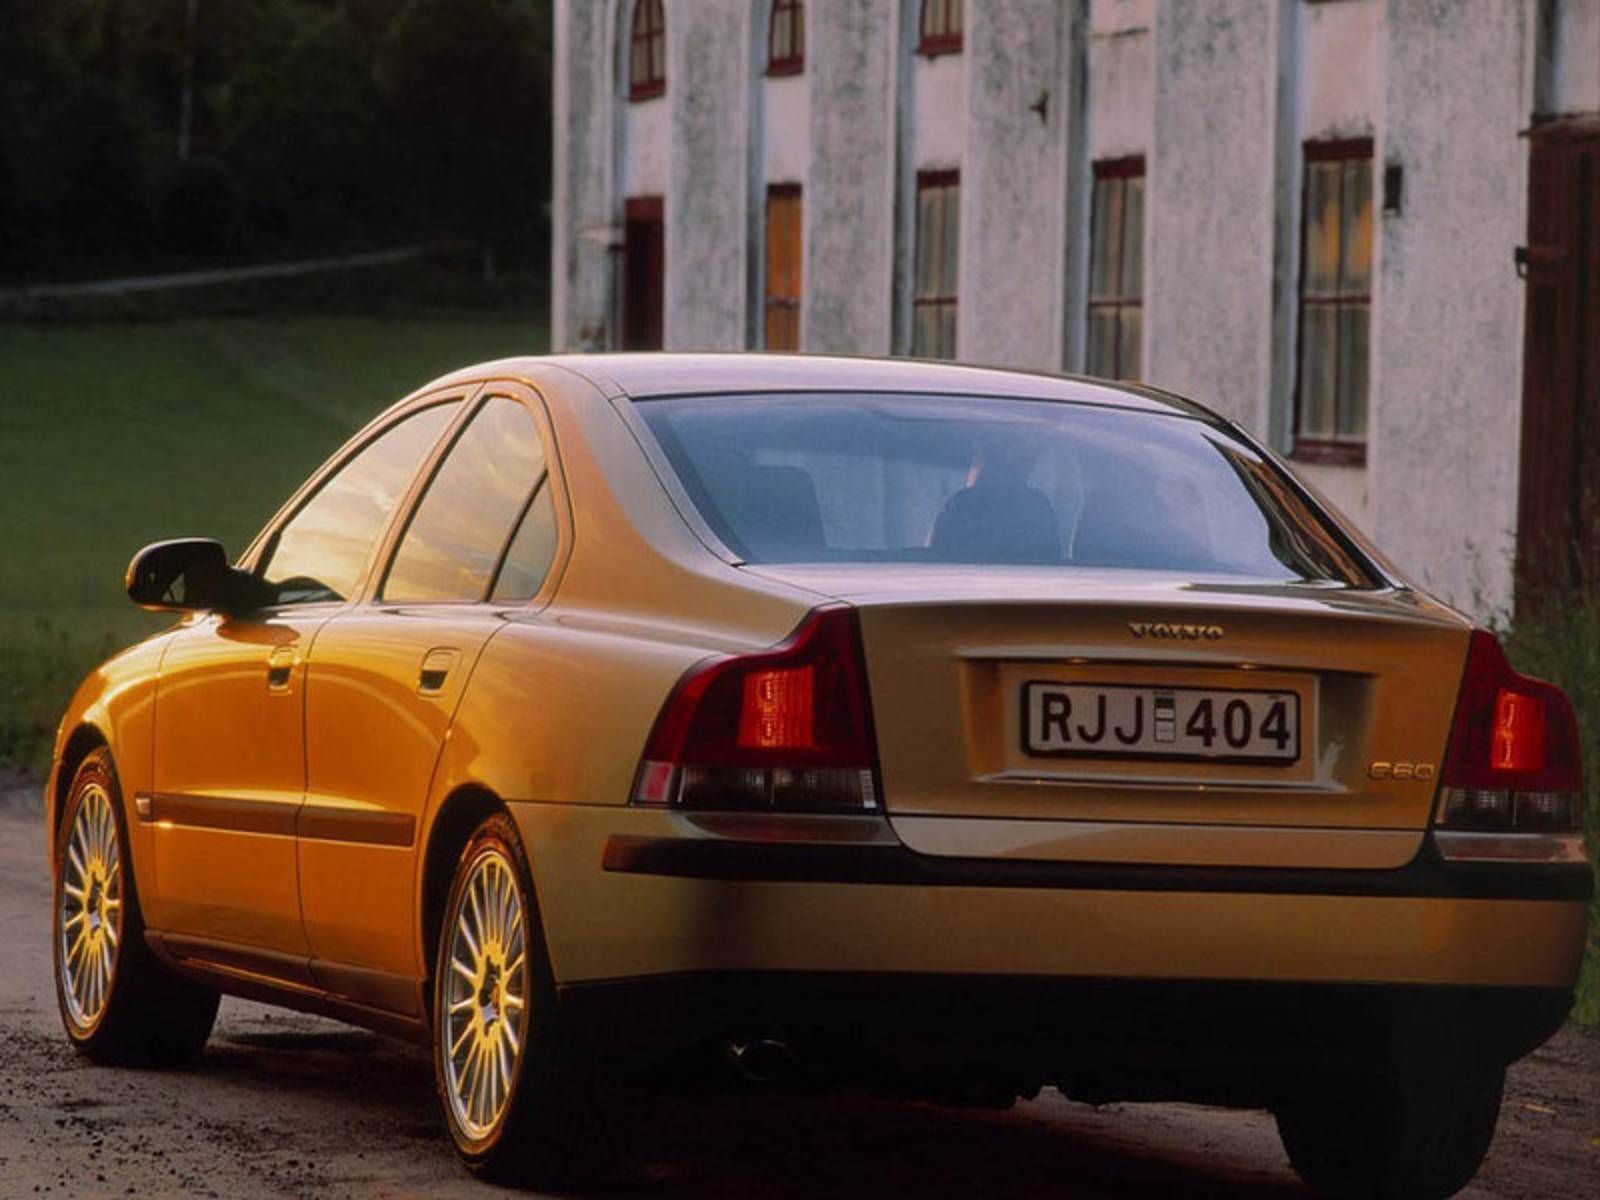 Volvo s60 2001. Volvo s60 2000. Volvo s60 i 2000 - 2004. Вольво s60 2001.